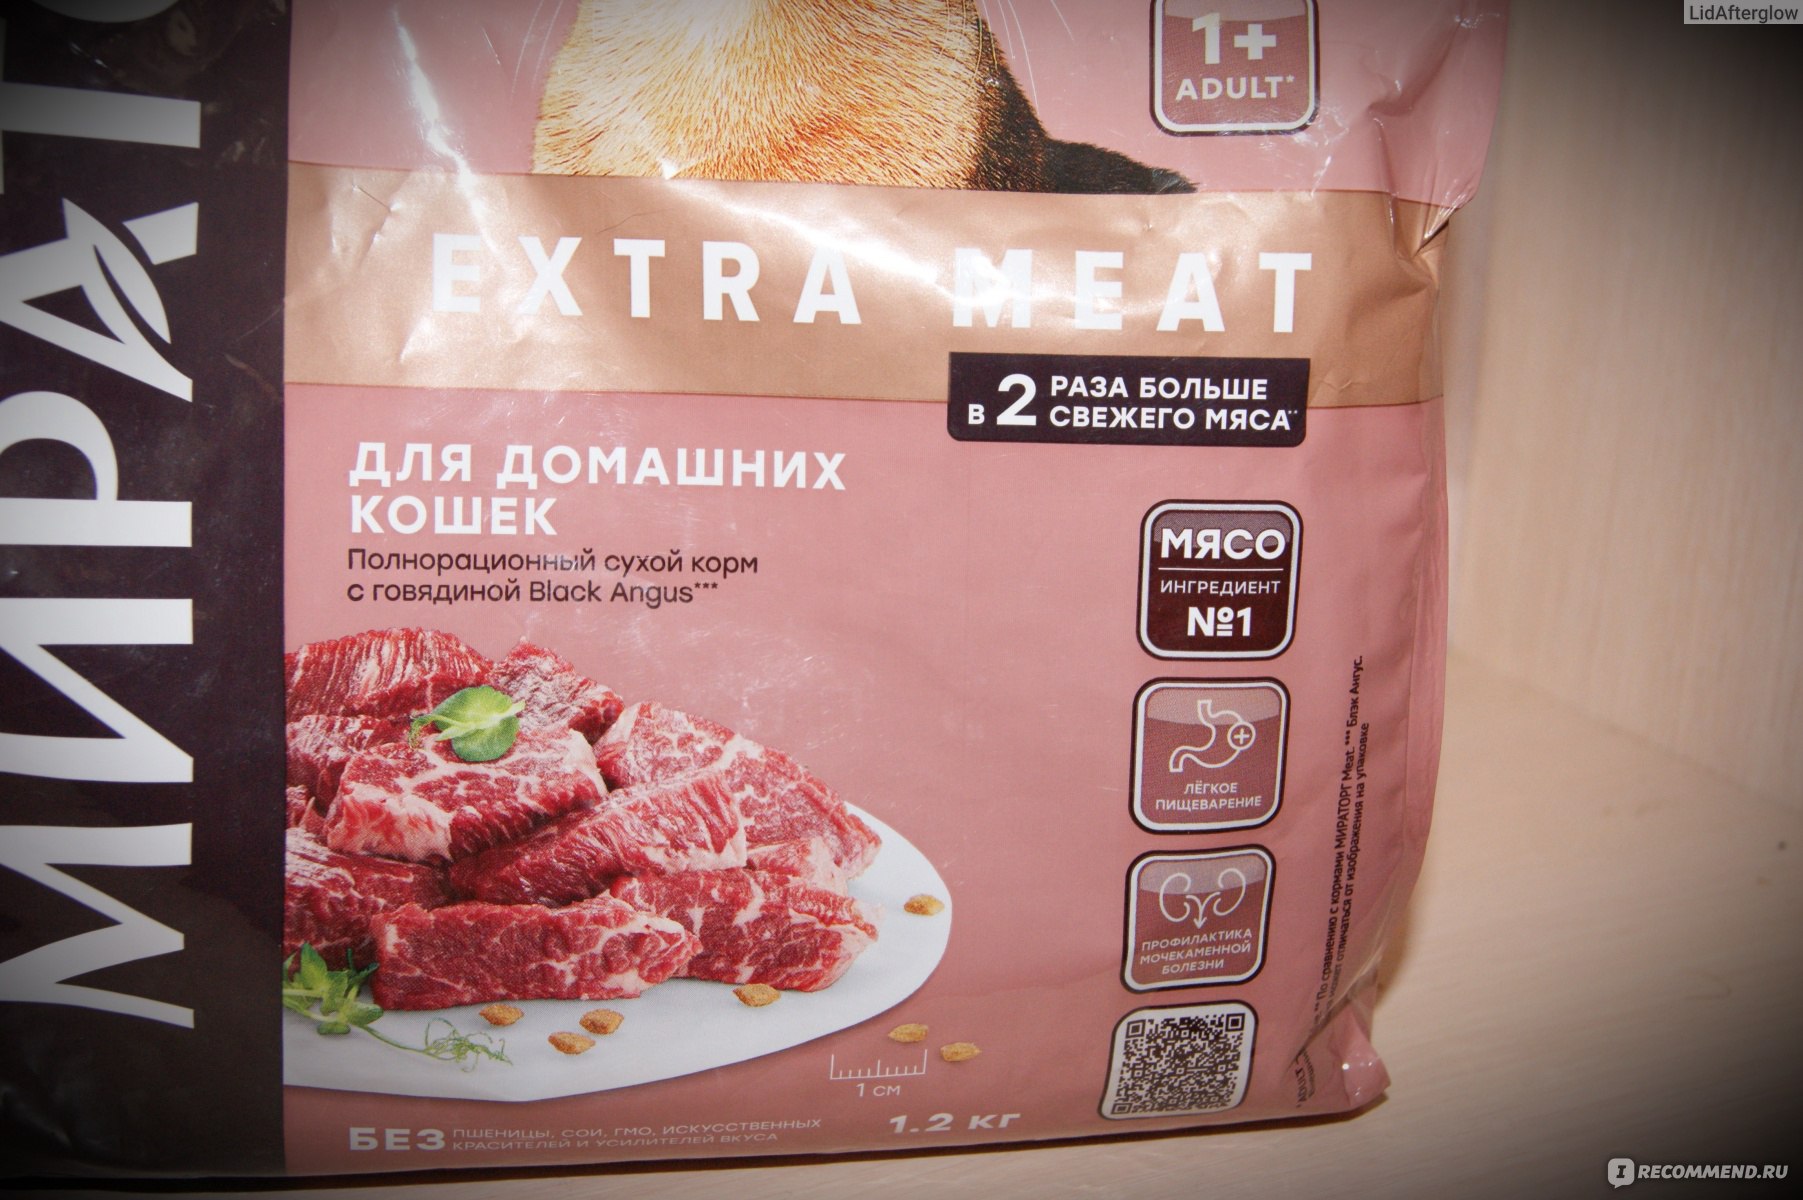 Корм мираторг extra meat